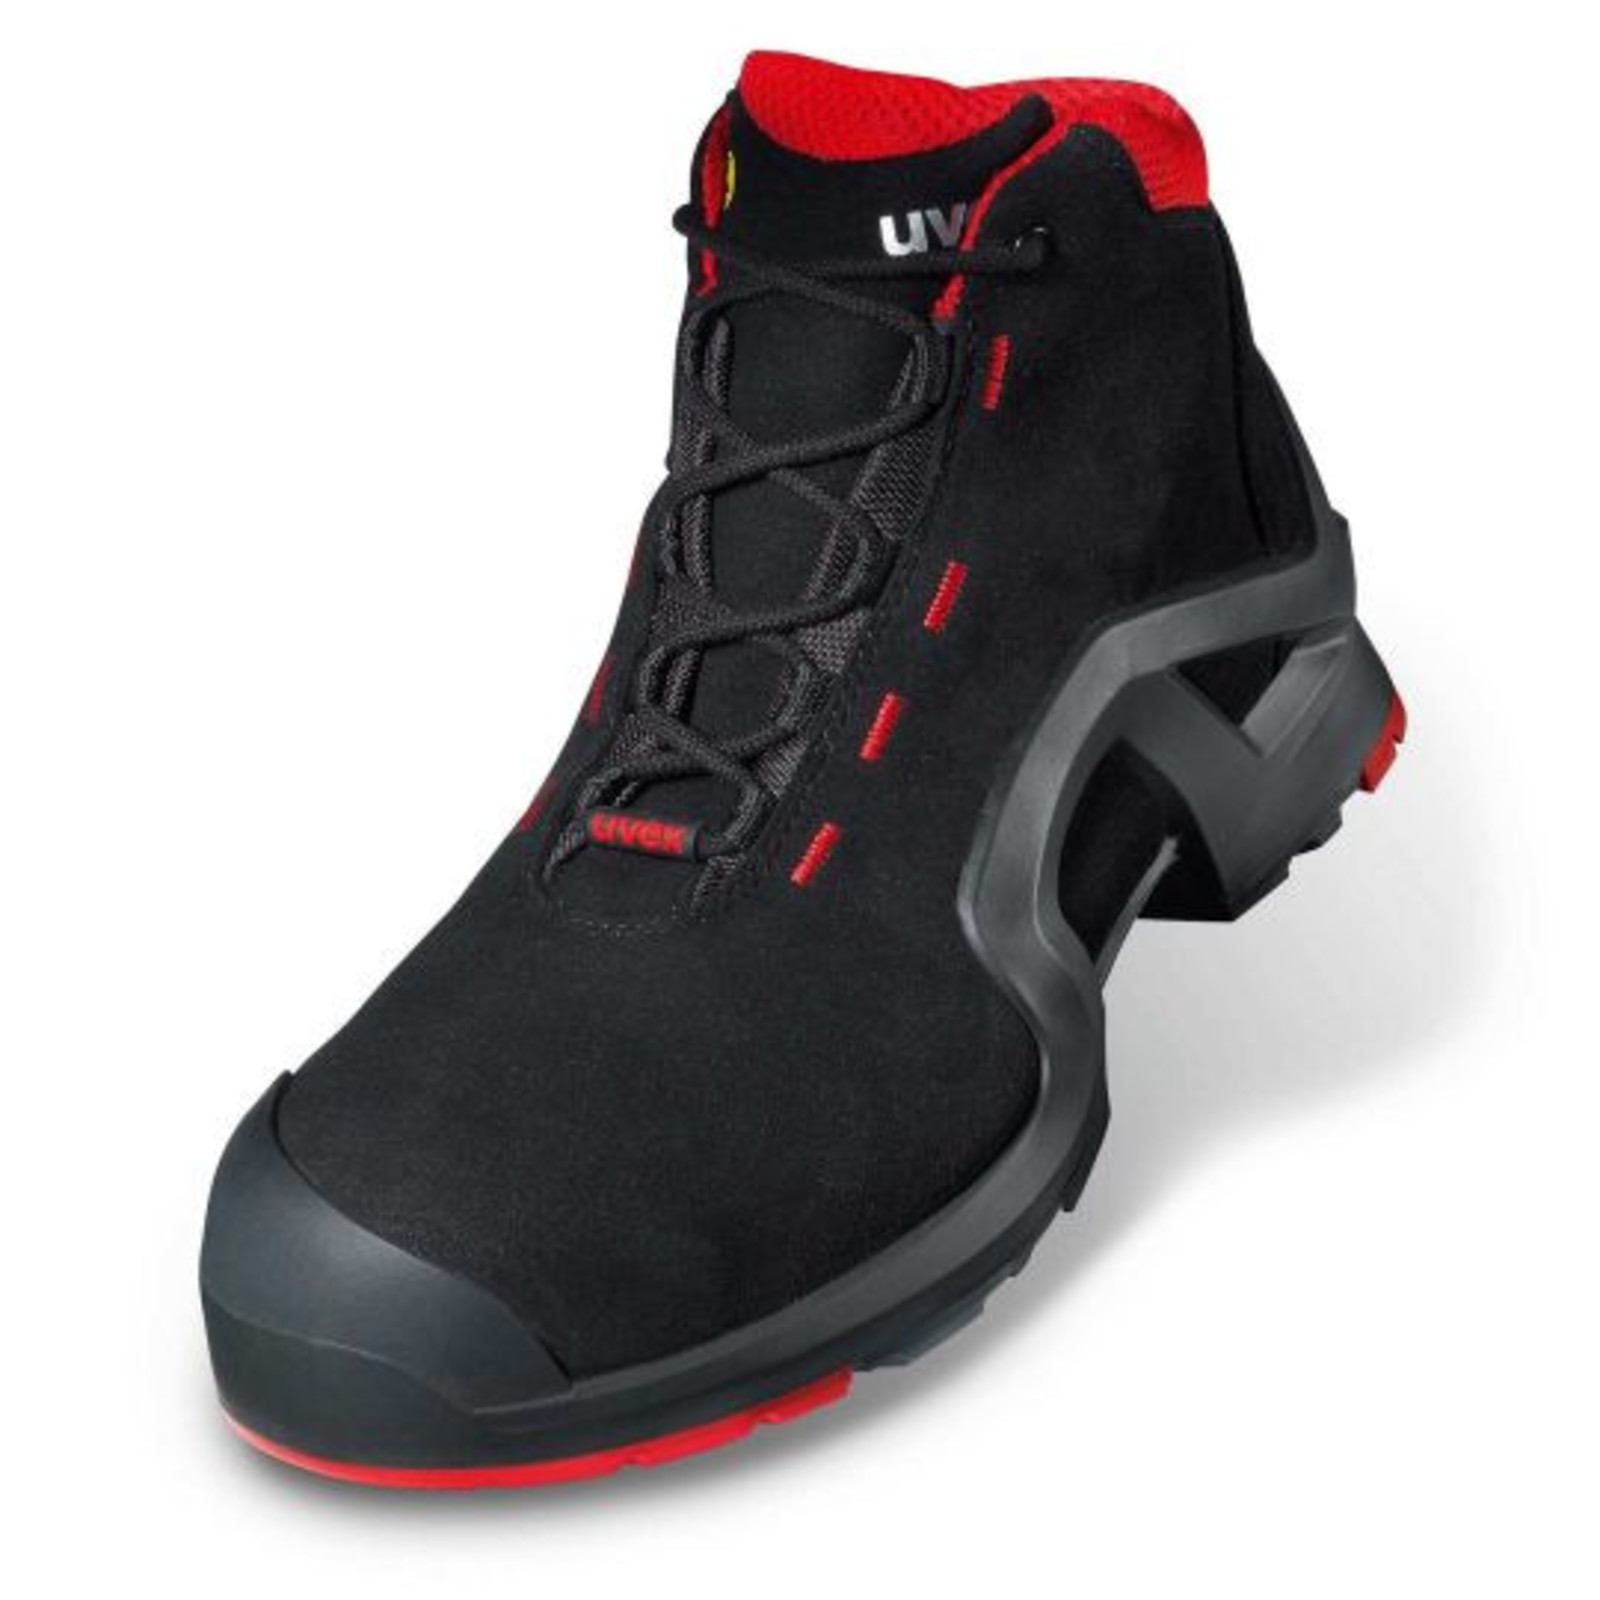 Vysoká bezpečnostná obuv Uvex 1 x-tended support S3 85172 - veľkosť: 45, farba: čierna/červená